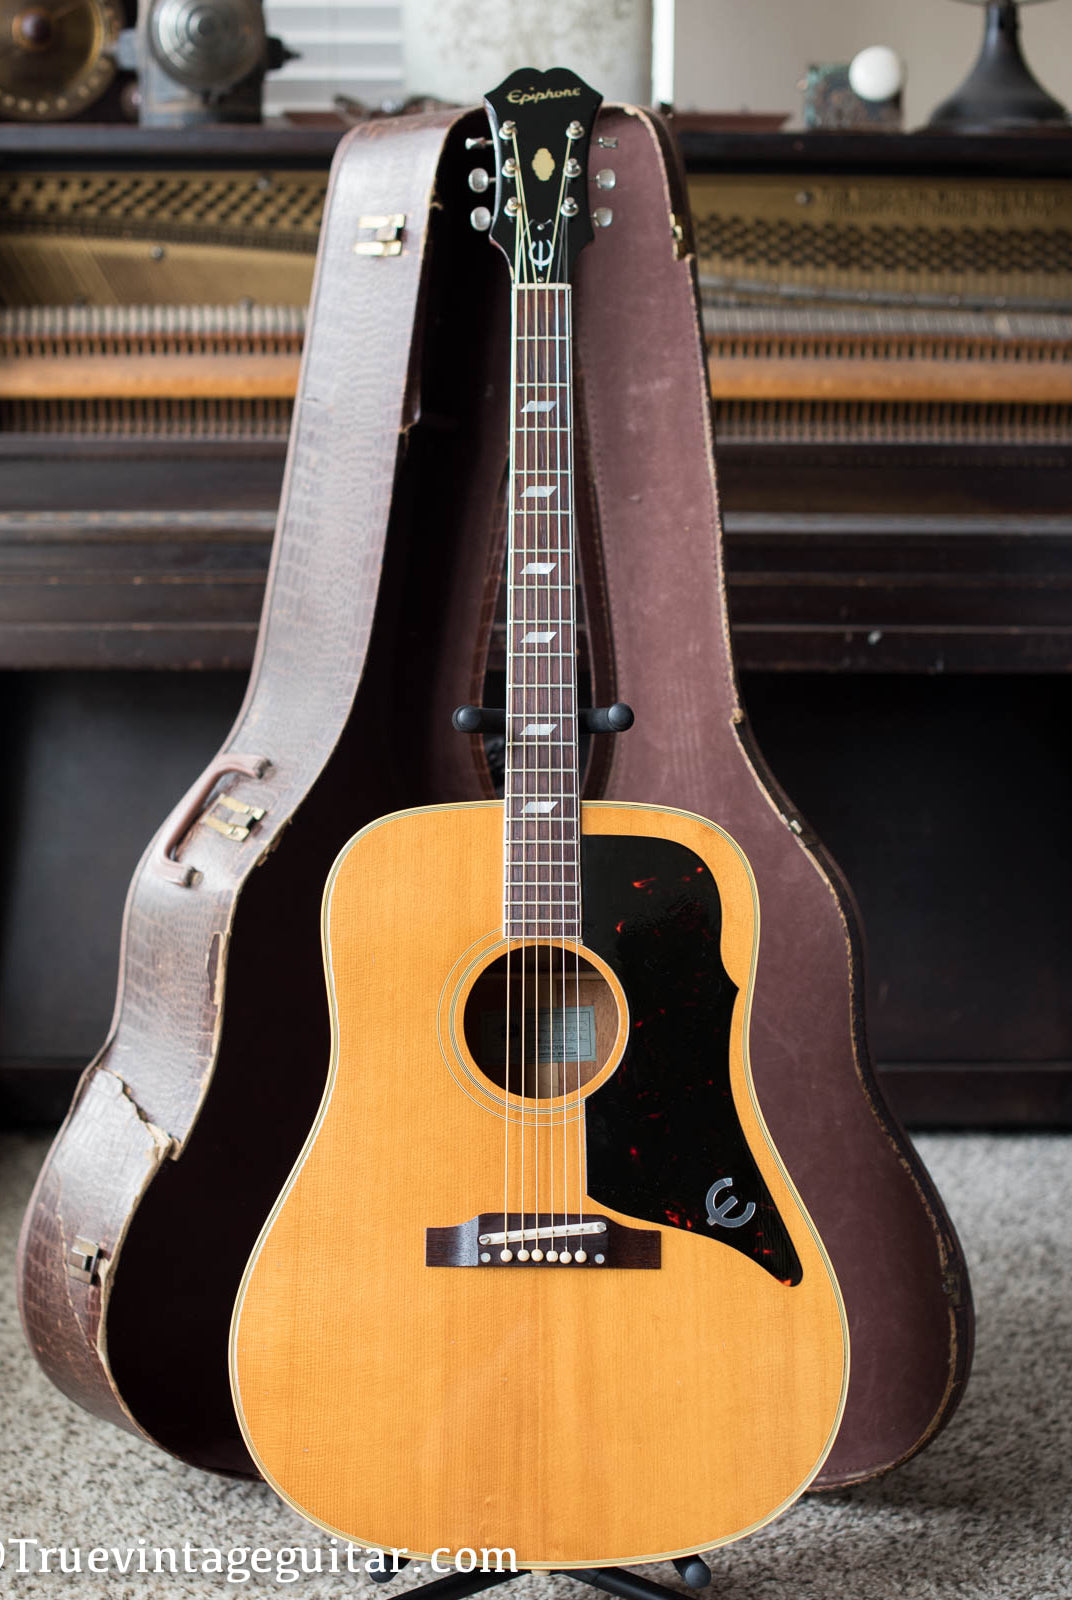 Epiphone FT90 El Dorado acoustic guitar vintage 1965